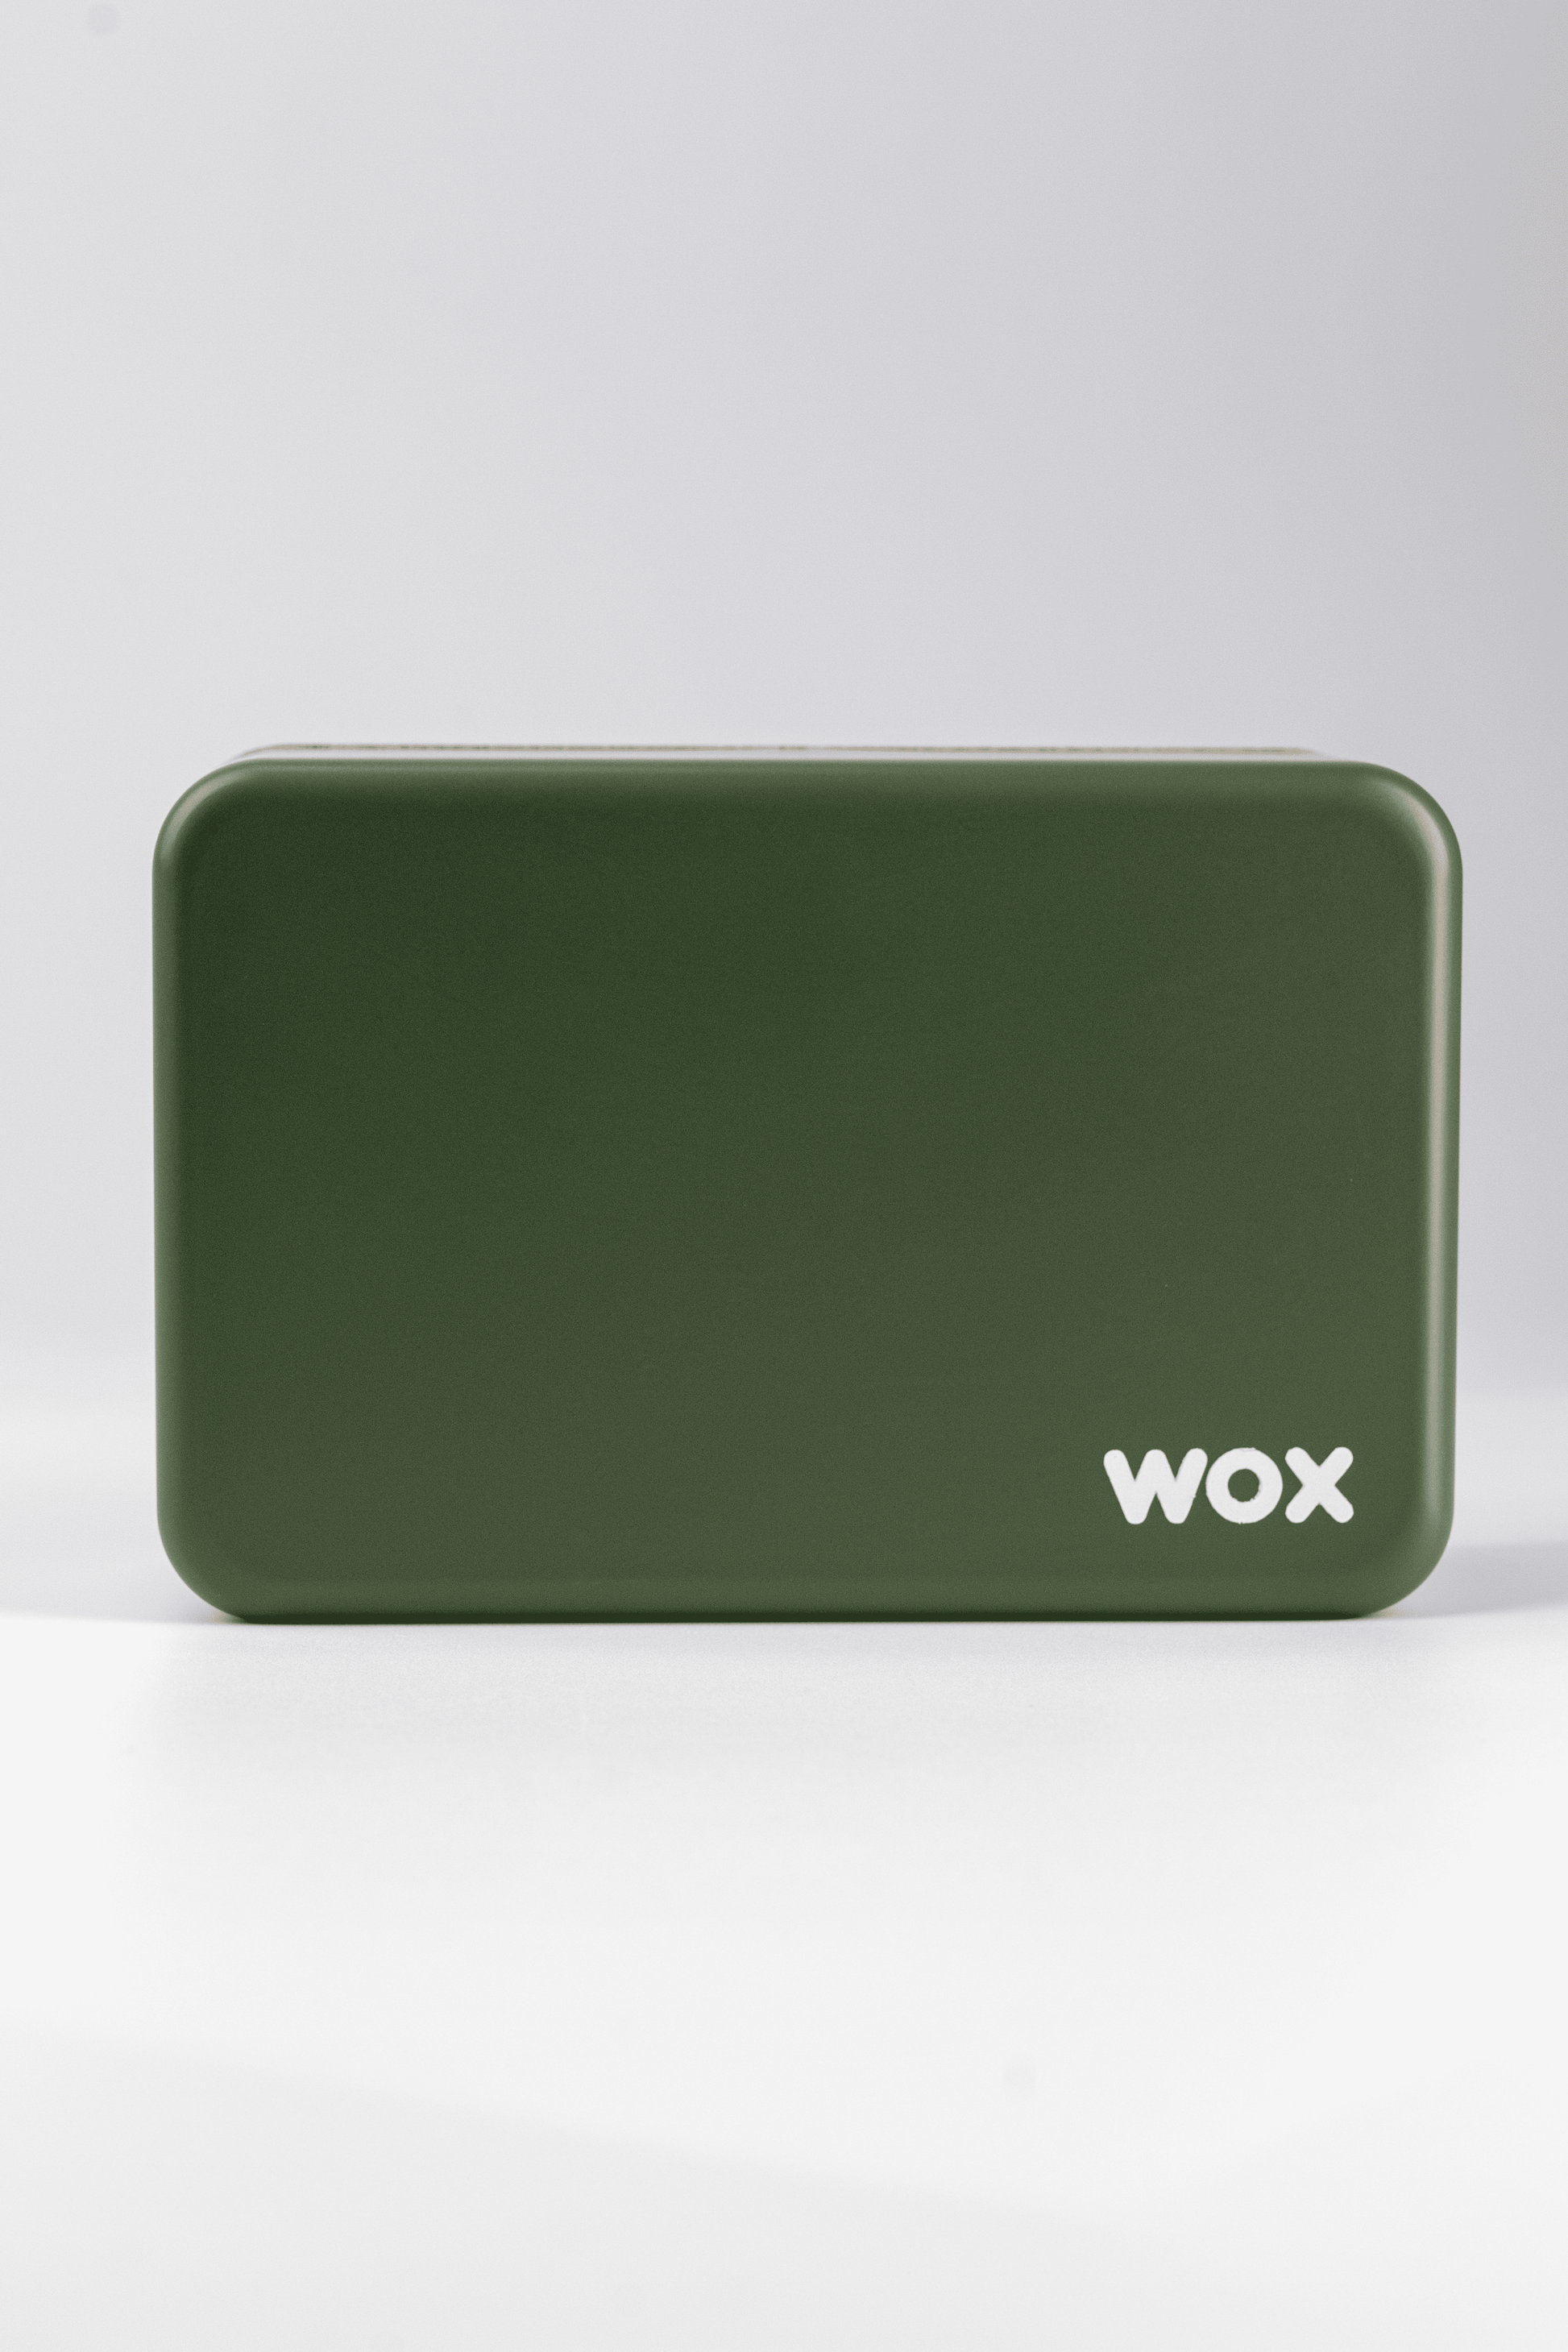 Weed Box Wox. Caixa para guardar tudo o que precisas para o teu ritual canábico. Caixa verde